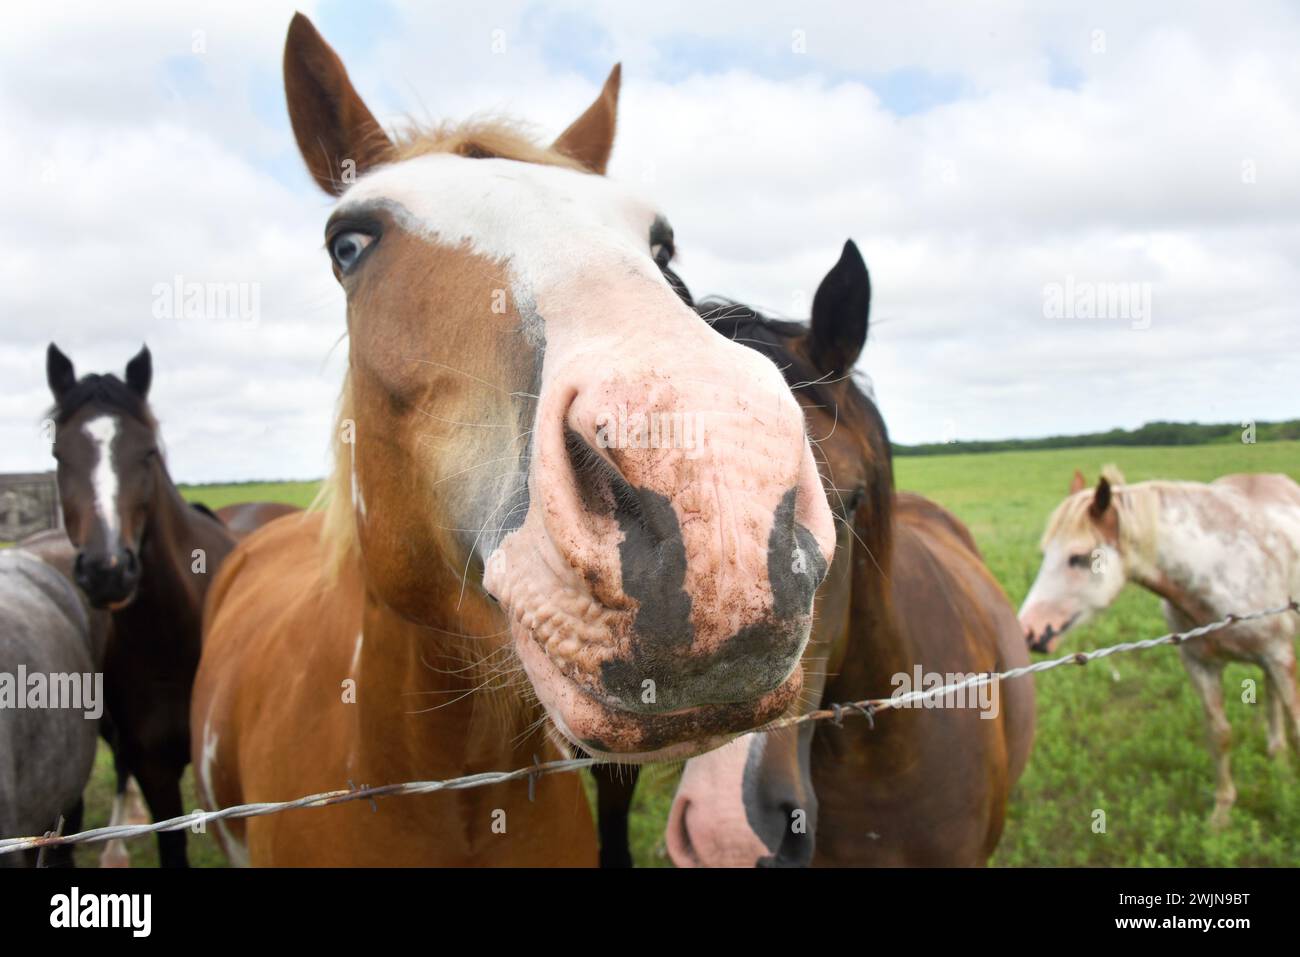 Curioso caballo extiende su nariz sobre la valla de alambre de púas. La nariz está sucia y sucia. Foto de stock